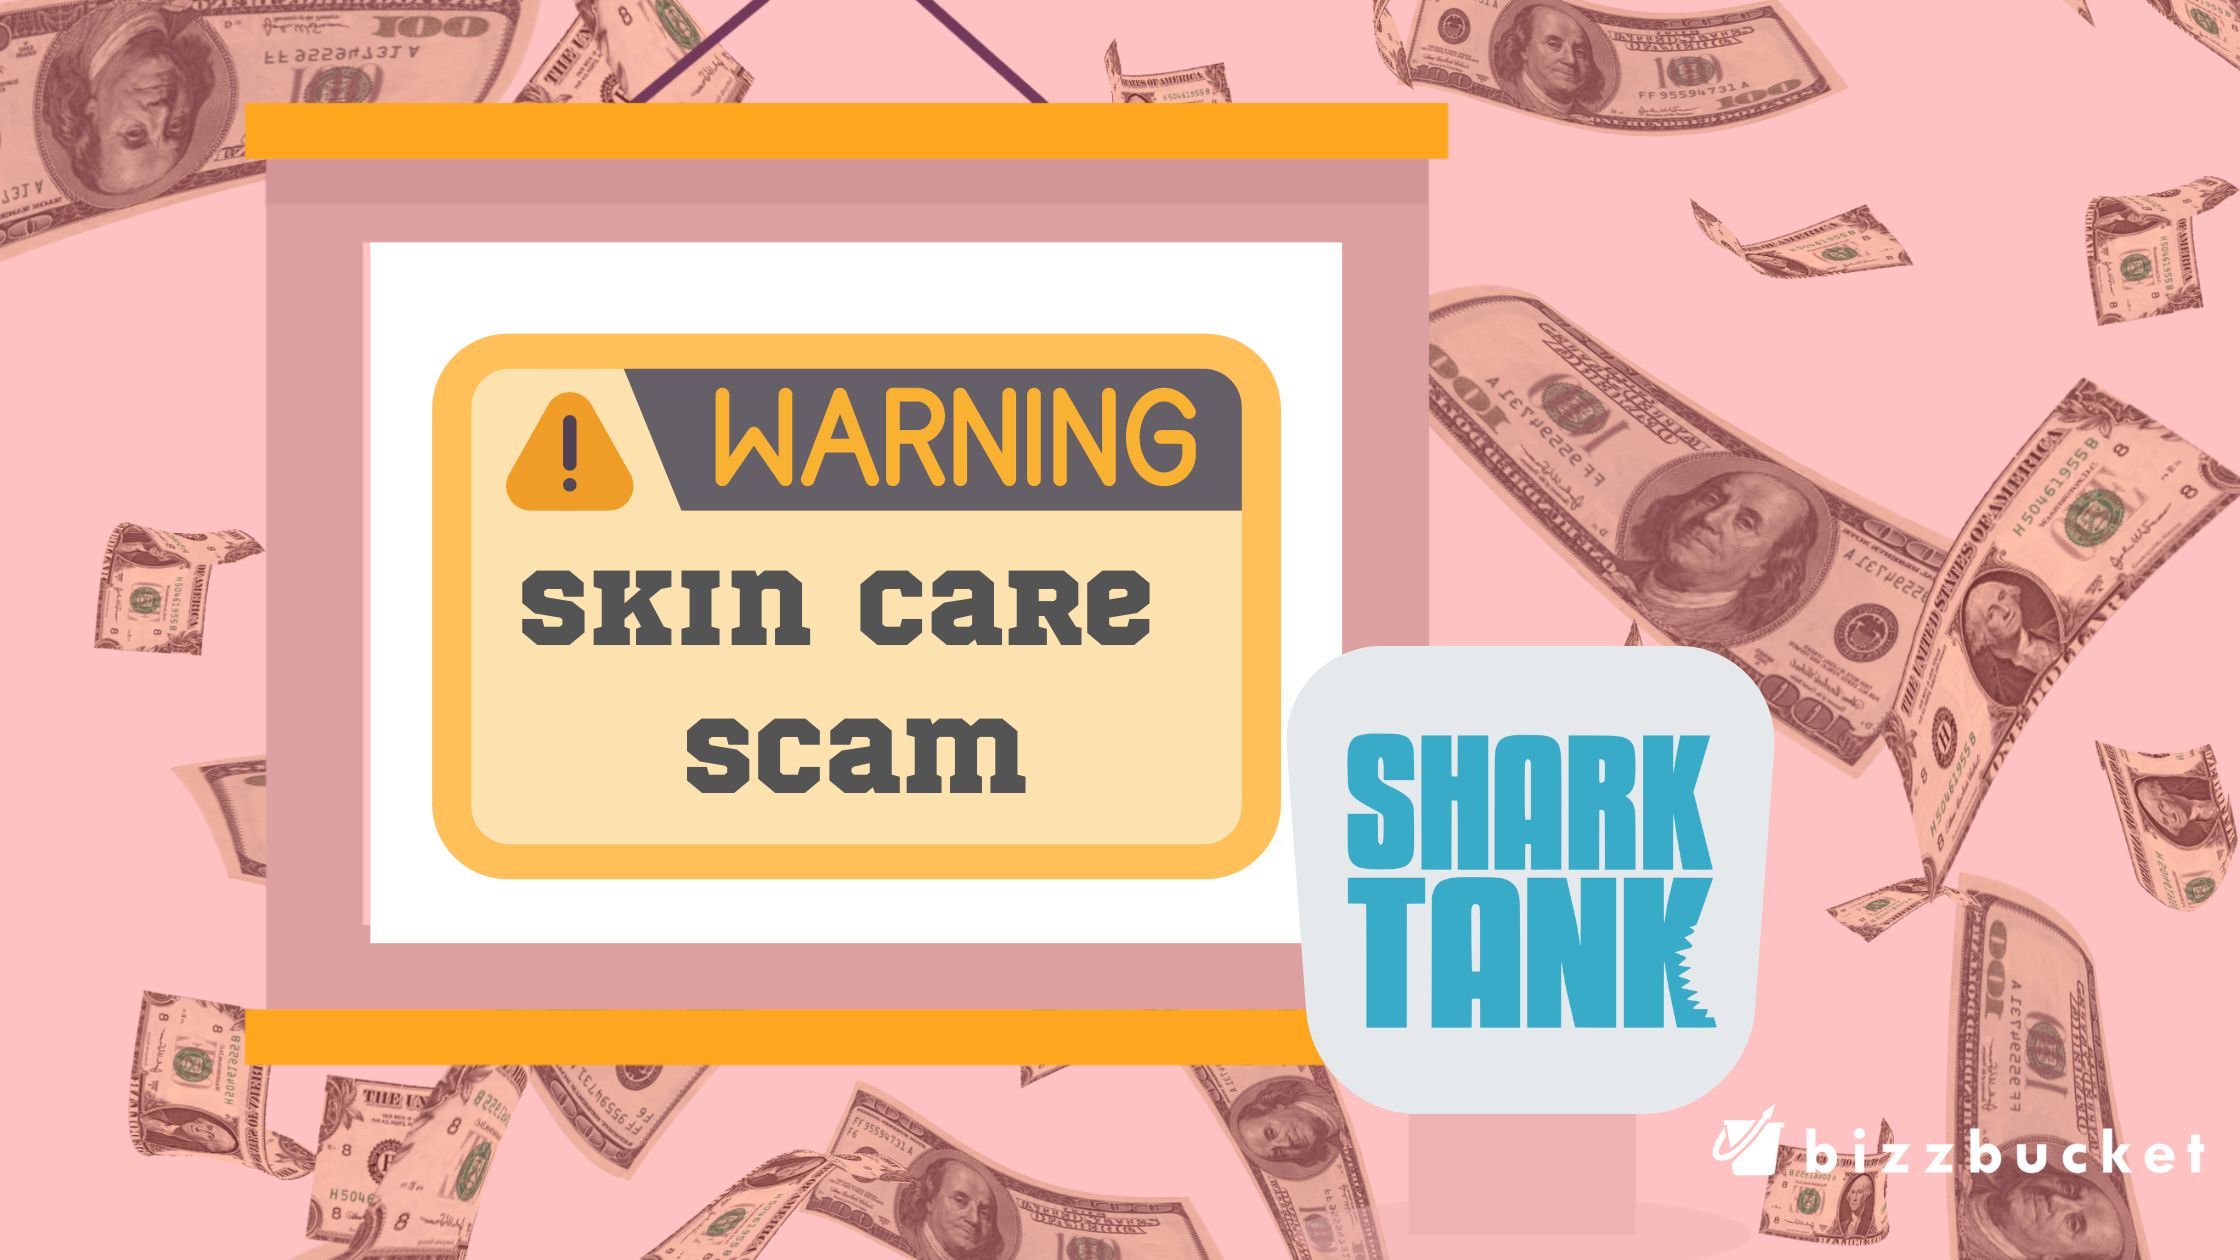 Shark Tank Skin Care